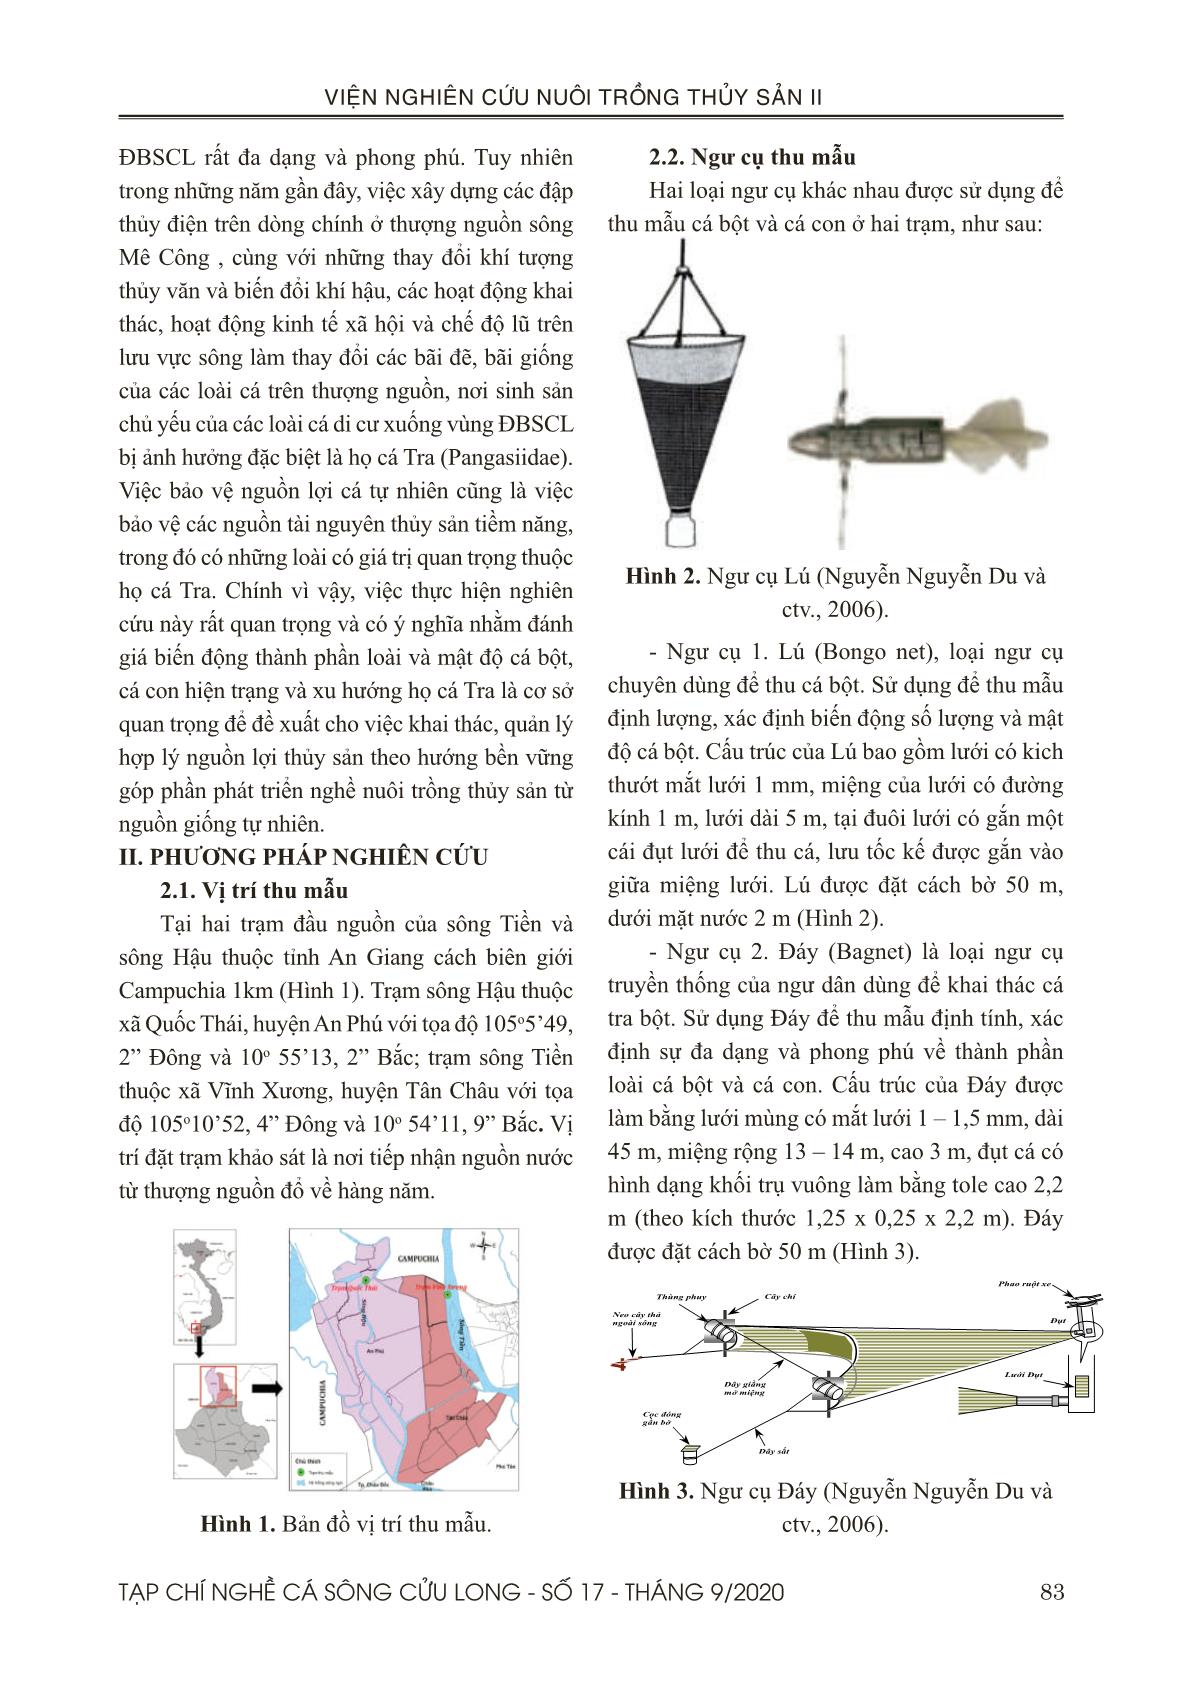 Mức độ đa dạng và phong phú của cá bột và cá con thuộc họ pangasiidae ở thượng nguồn sông Tiền và Sông hậu giai đoạn 2017 – 2019 trang 2